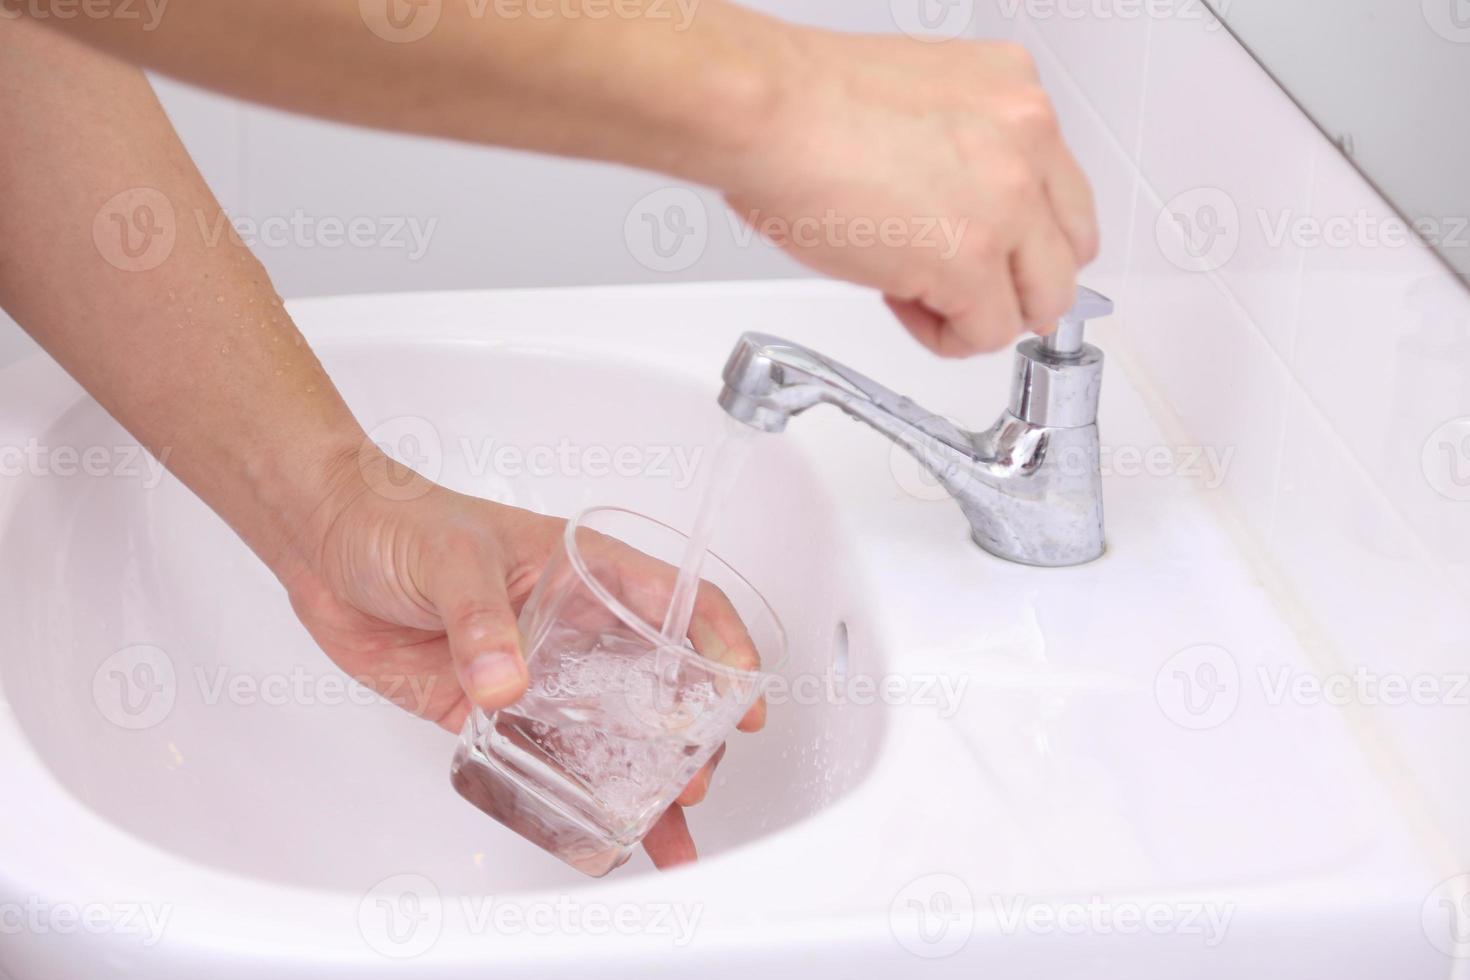 handen wassen in wastafel foto